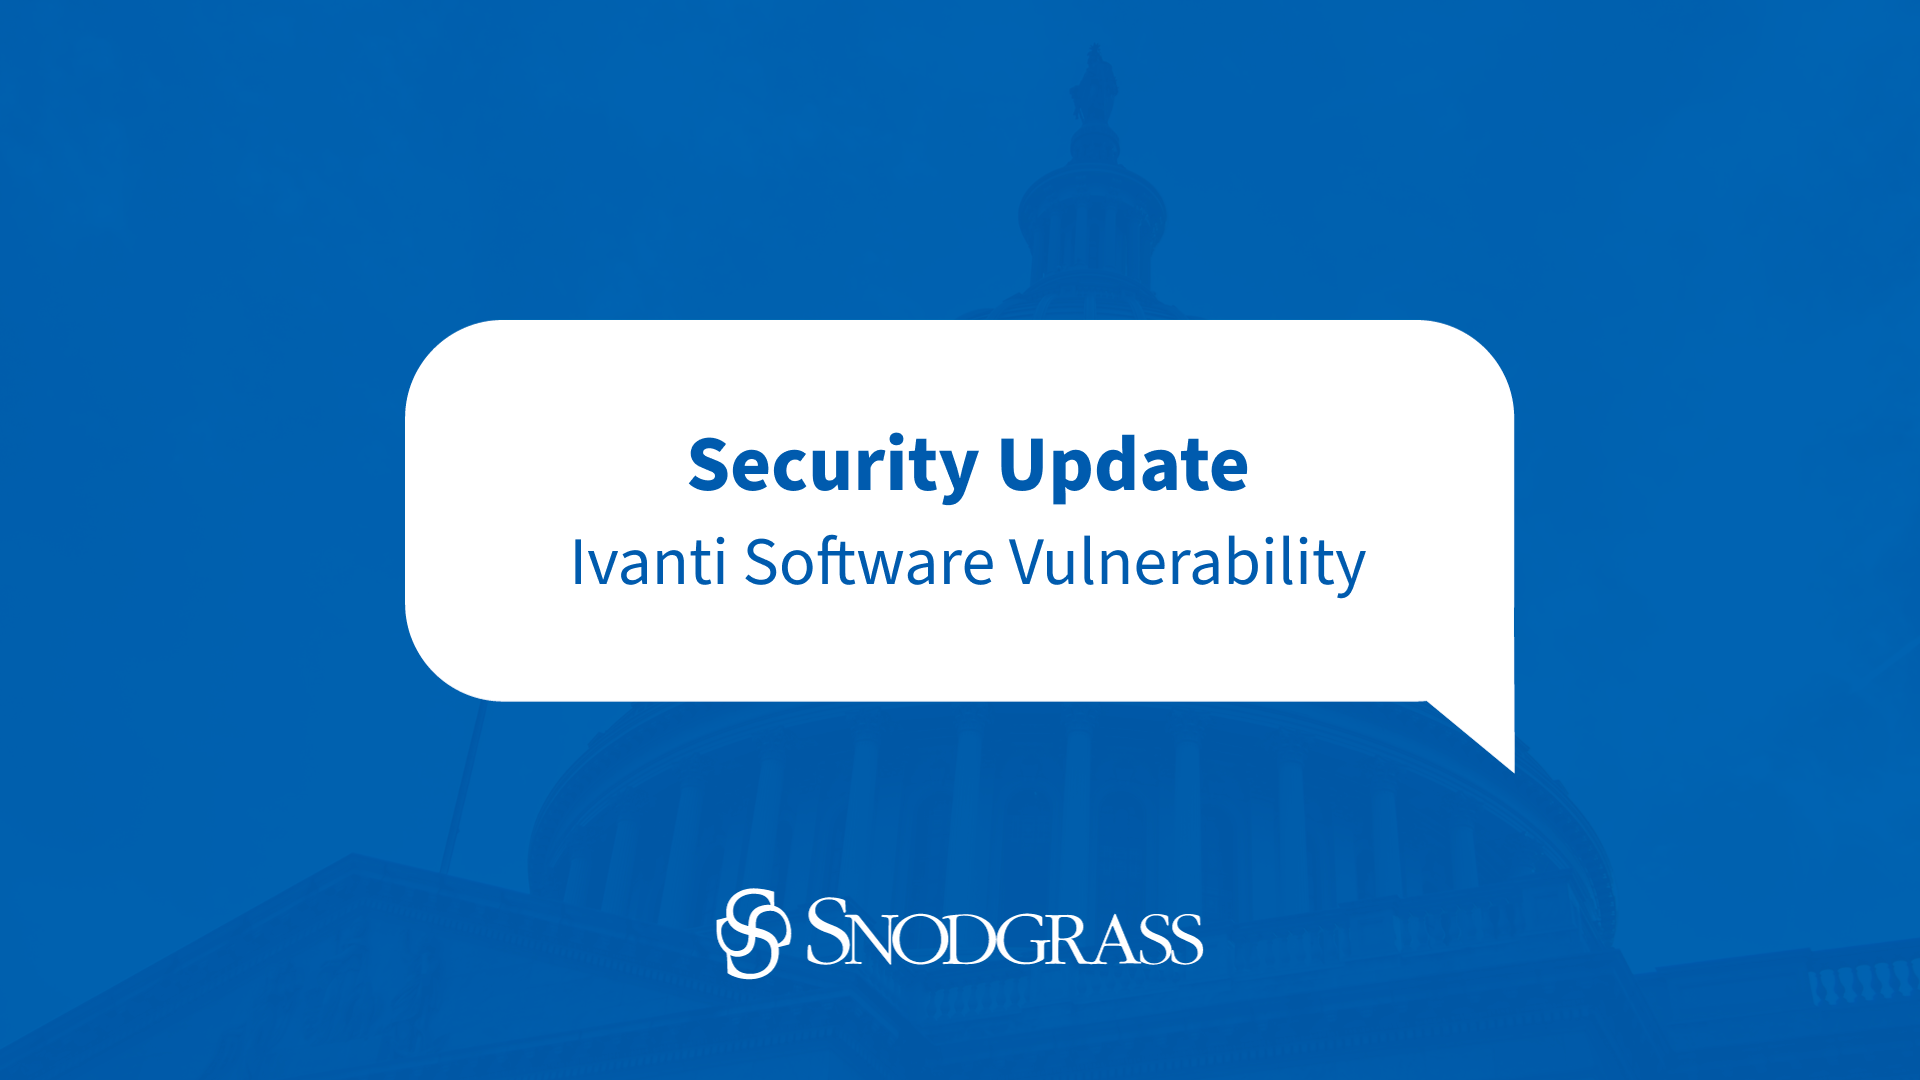 S.R. Snodgrass | Security Update Ivanti Software Vulnerability